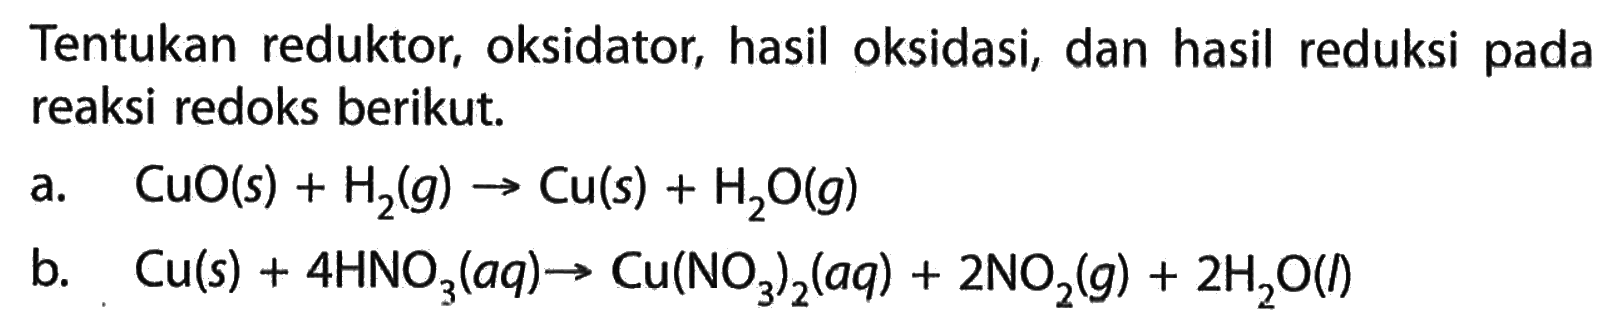 Tentukan reduktor, oksidator, hasil oksidasi, dan hasil reduksi pada reaksi redoks berikut. a. CuO(s)+H2(g) -> Cu(s)+H2O(g)  b. Cu(s)+4 HNO3(aq) -> Cu(NO3)2(aq)+2 NO2(g)+2 H2O(1) 